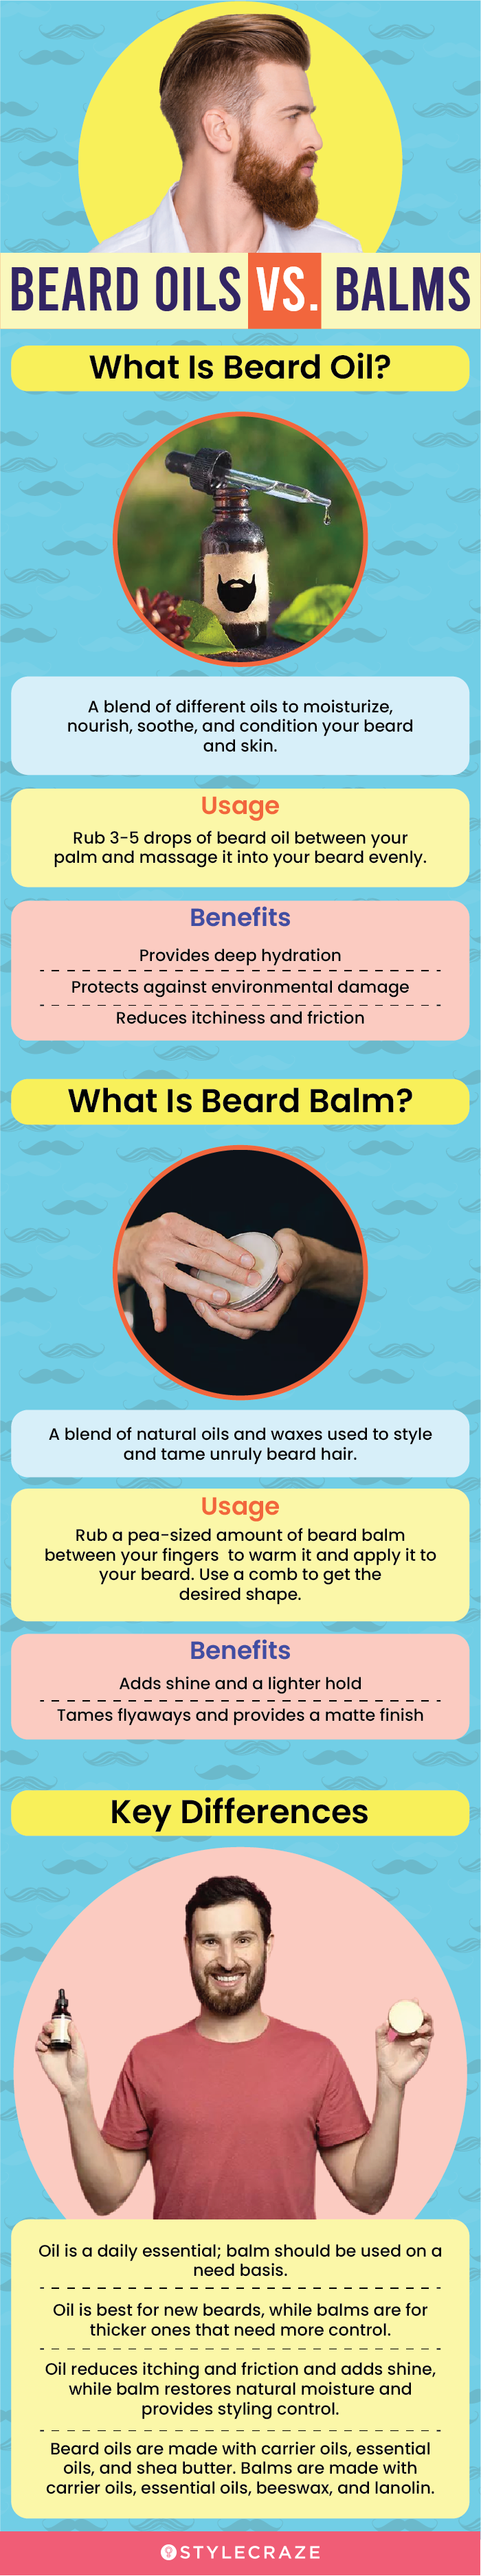 beard oils vs. balms (infographic)